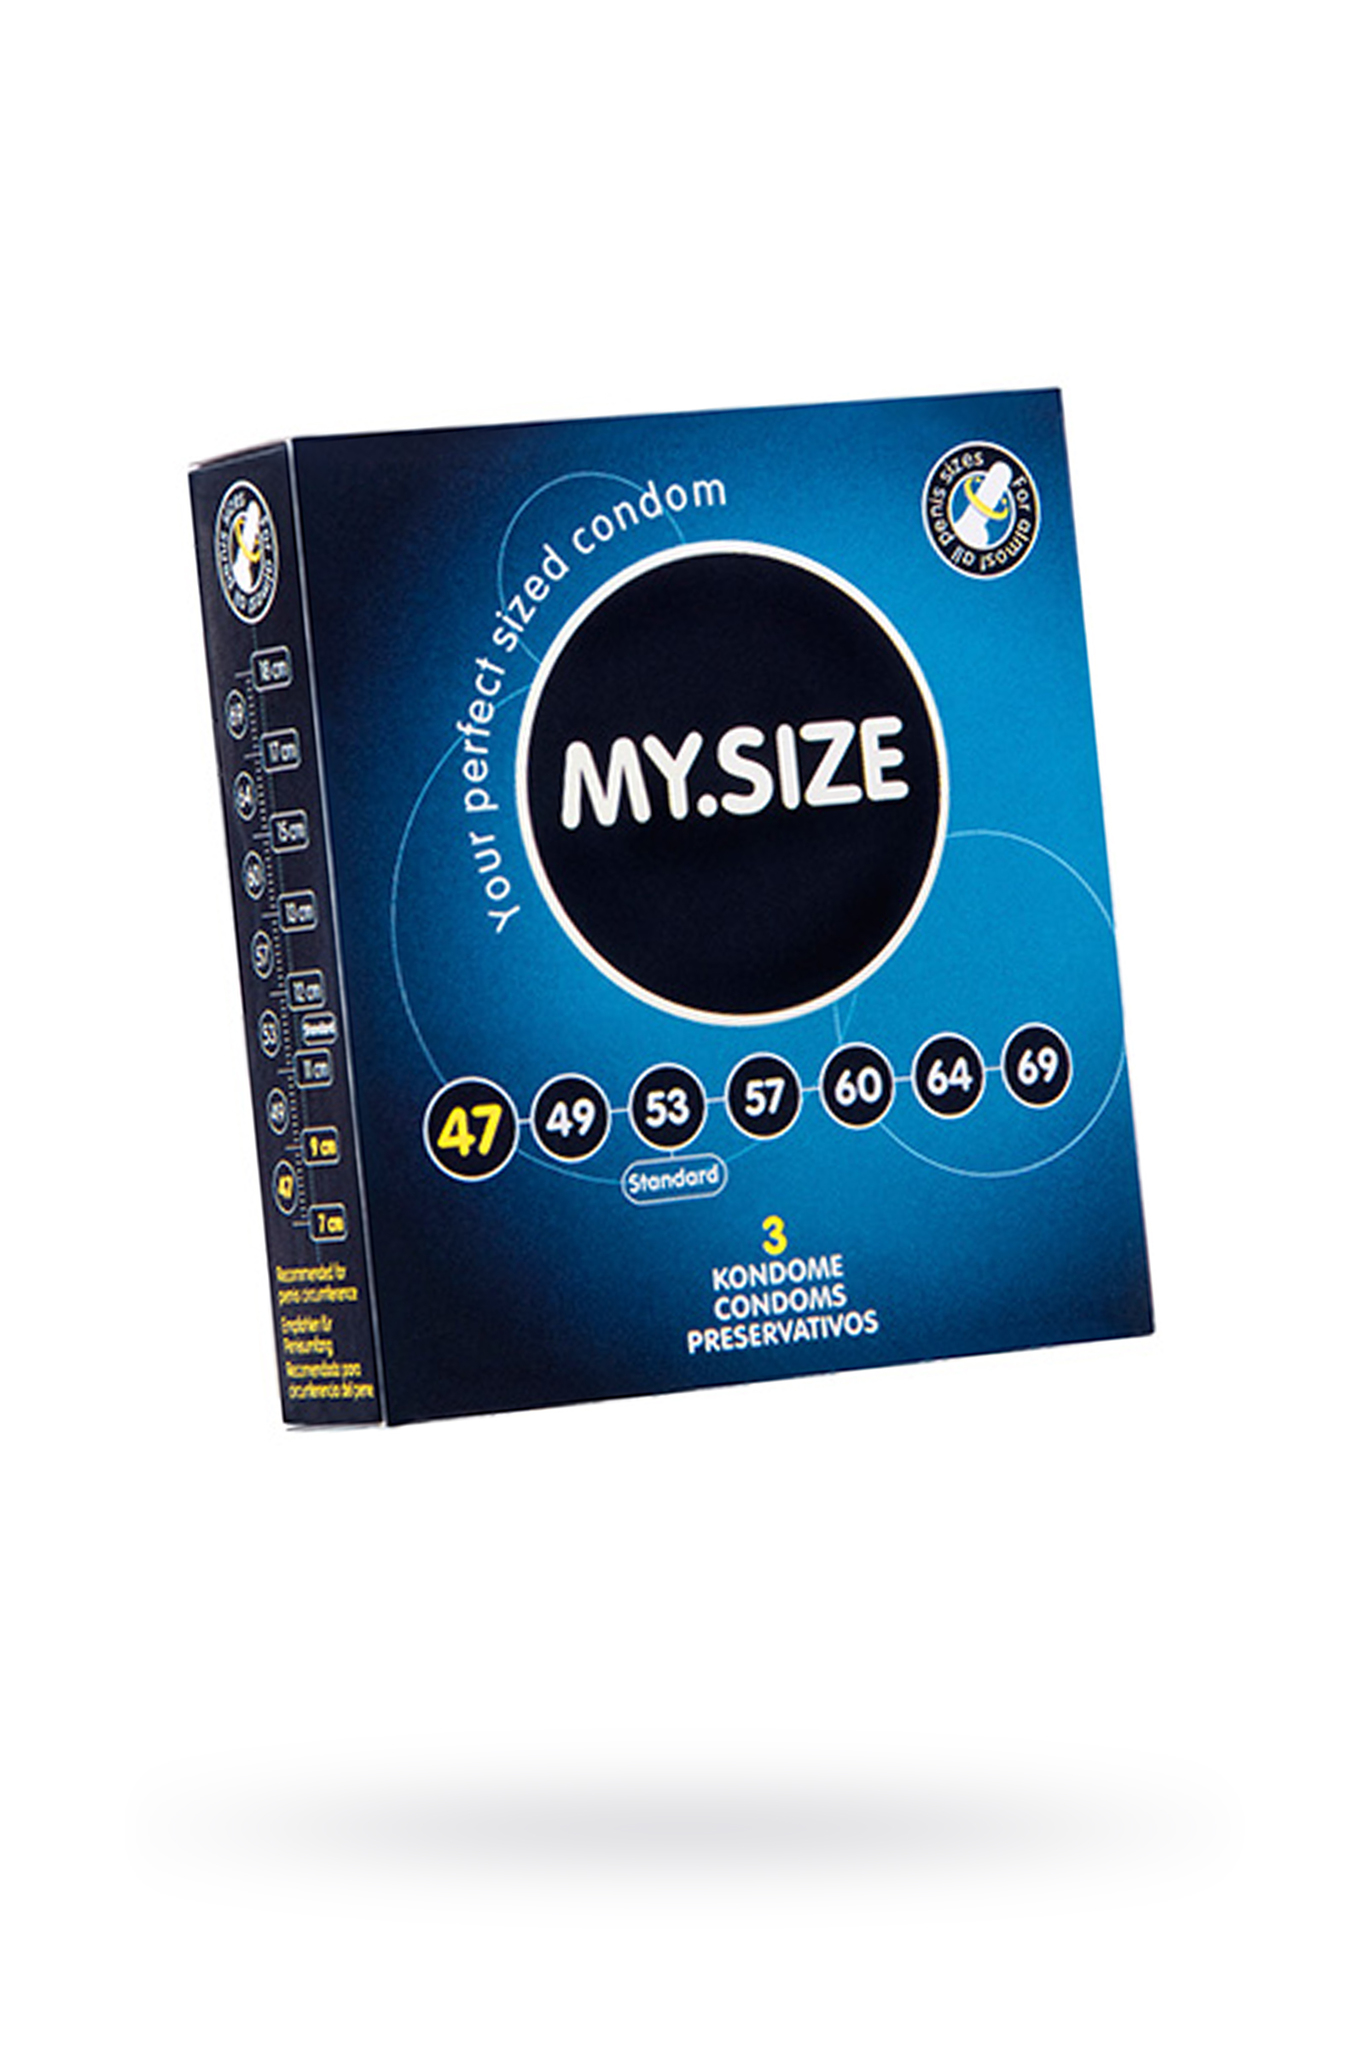 Презервативы  MY.SIZE №3 размер 47 (ширина 47mm) фото